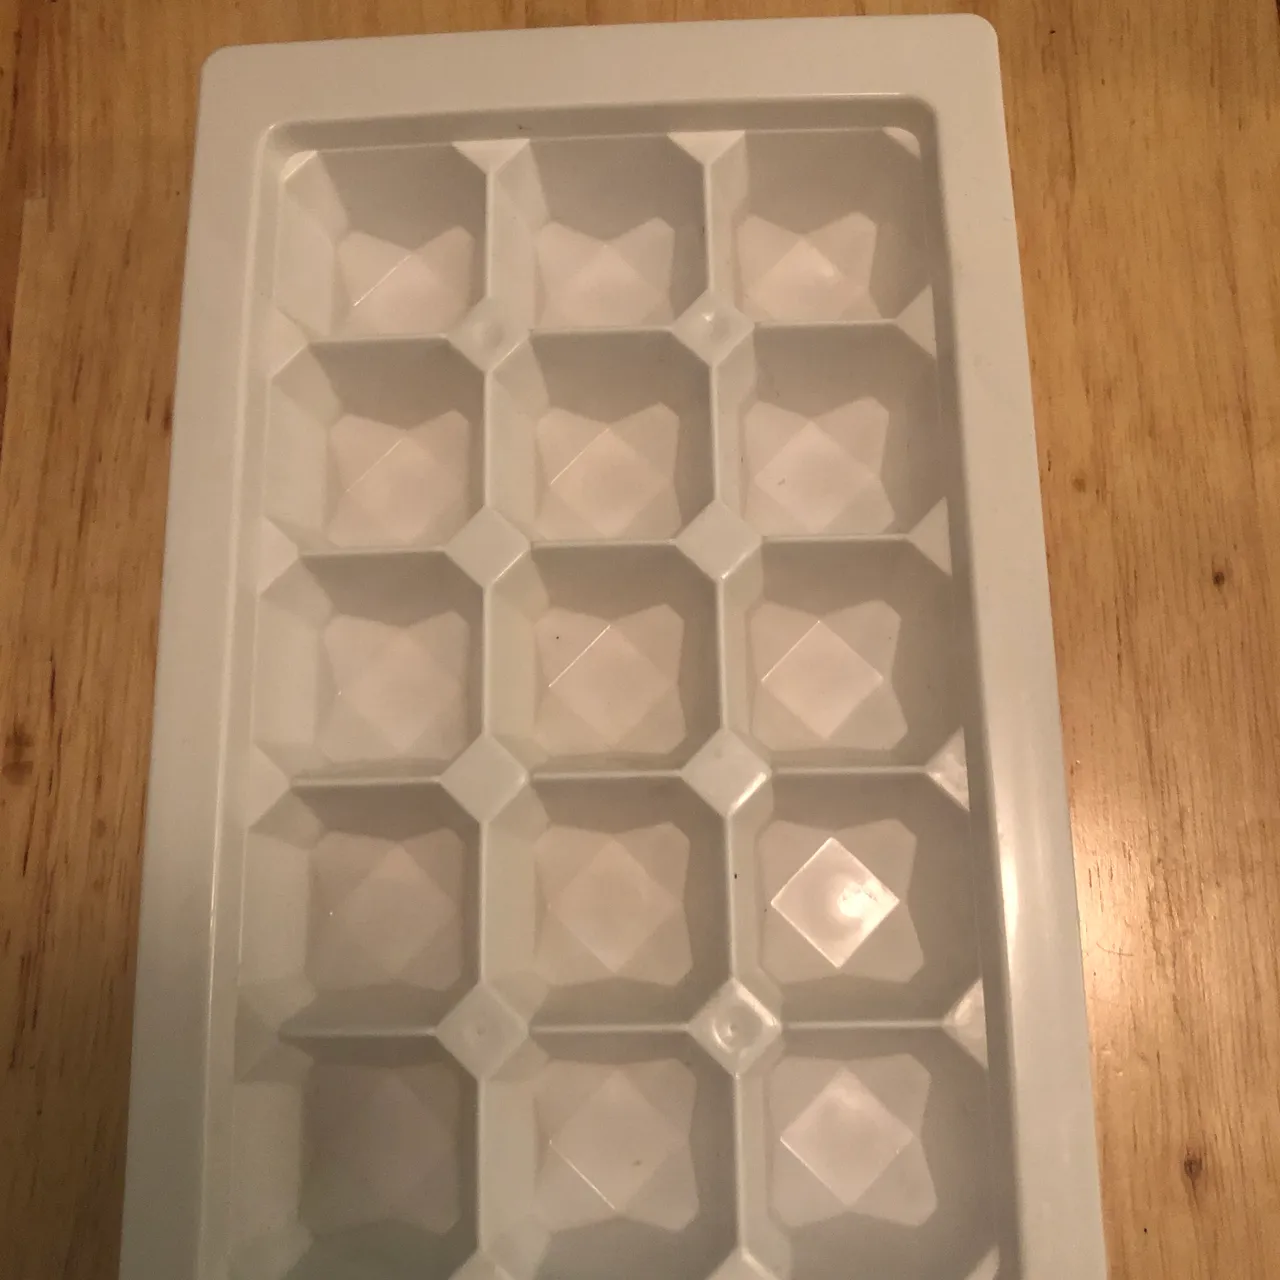 Small ice cube tray photo 1